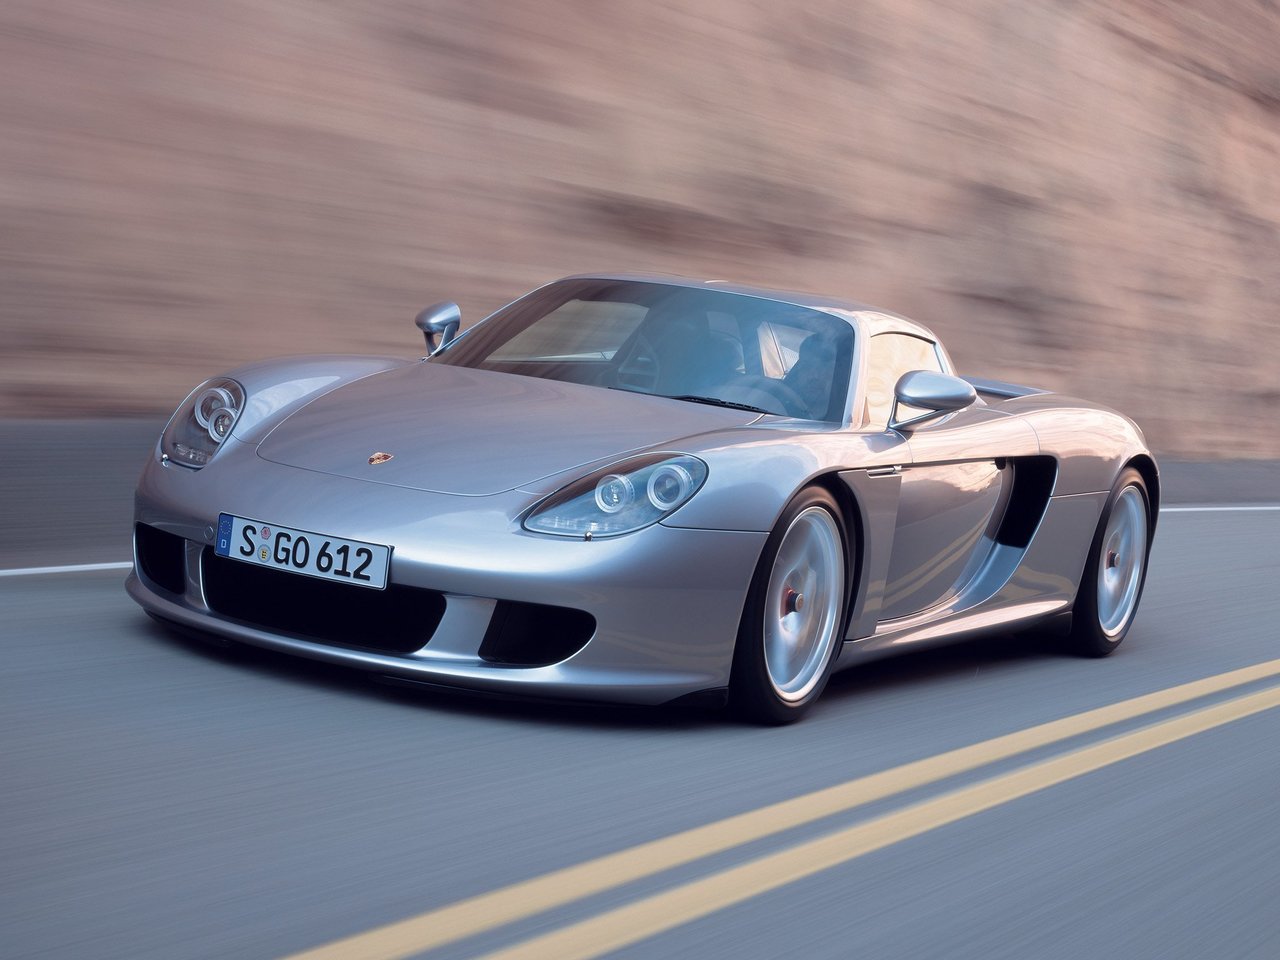 Расход газа одной комплектации тарги Porsche Carrera GT. Разница стоимости заправки газом и бензином. Автономный пробег до и после установки ГБО.